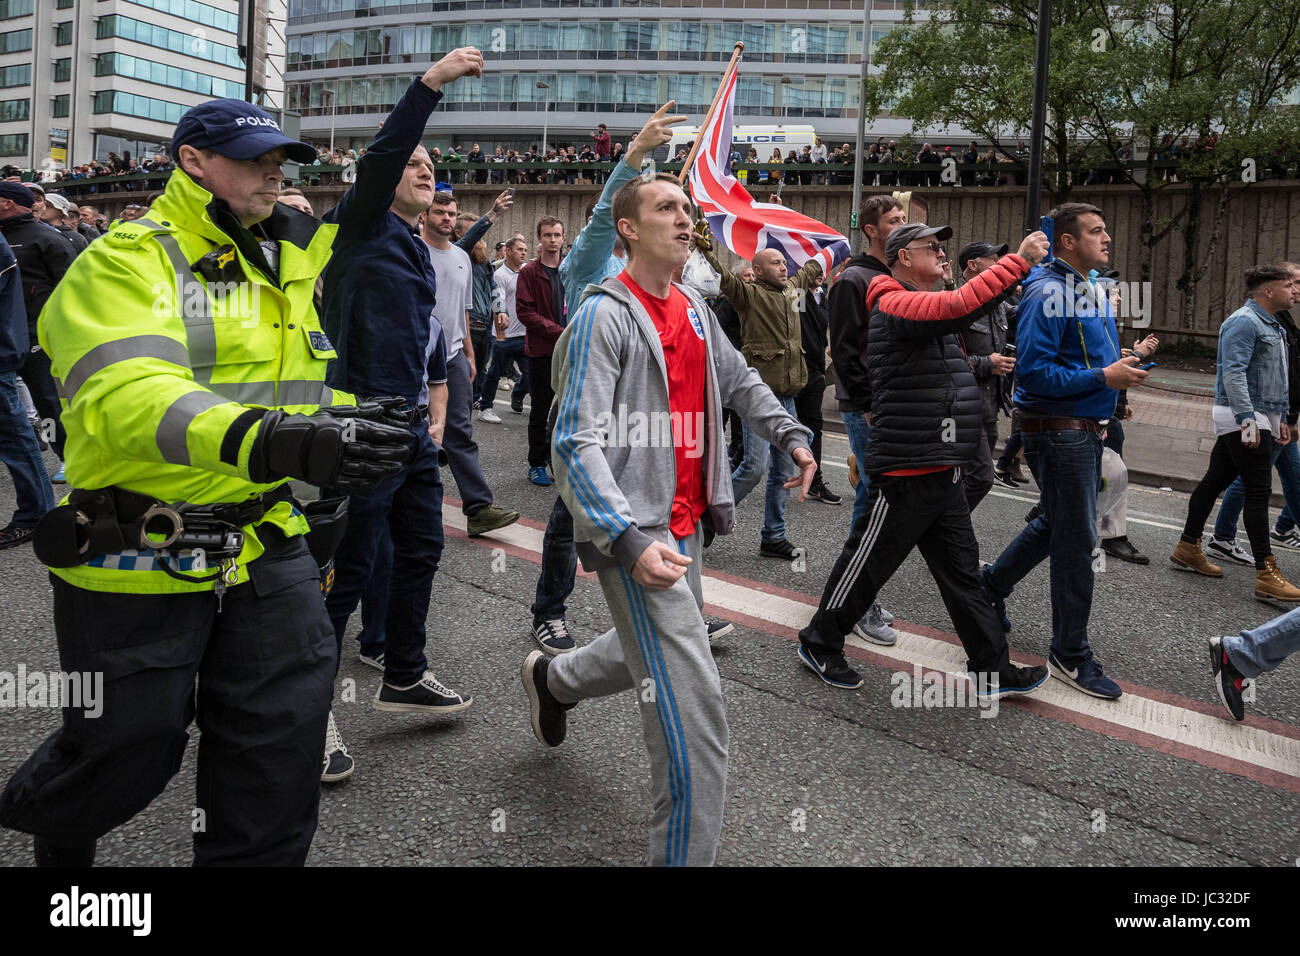 Environ 1 000 fréquentent 'de droite s'unissent contre la haine" anti-islamique et rallye mars dirigée par Tommy Robinson dans le centre-ville de Manchester, au Royaume-Uni. Banque D'Images